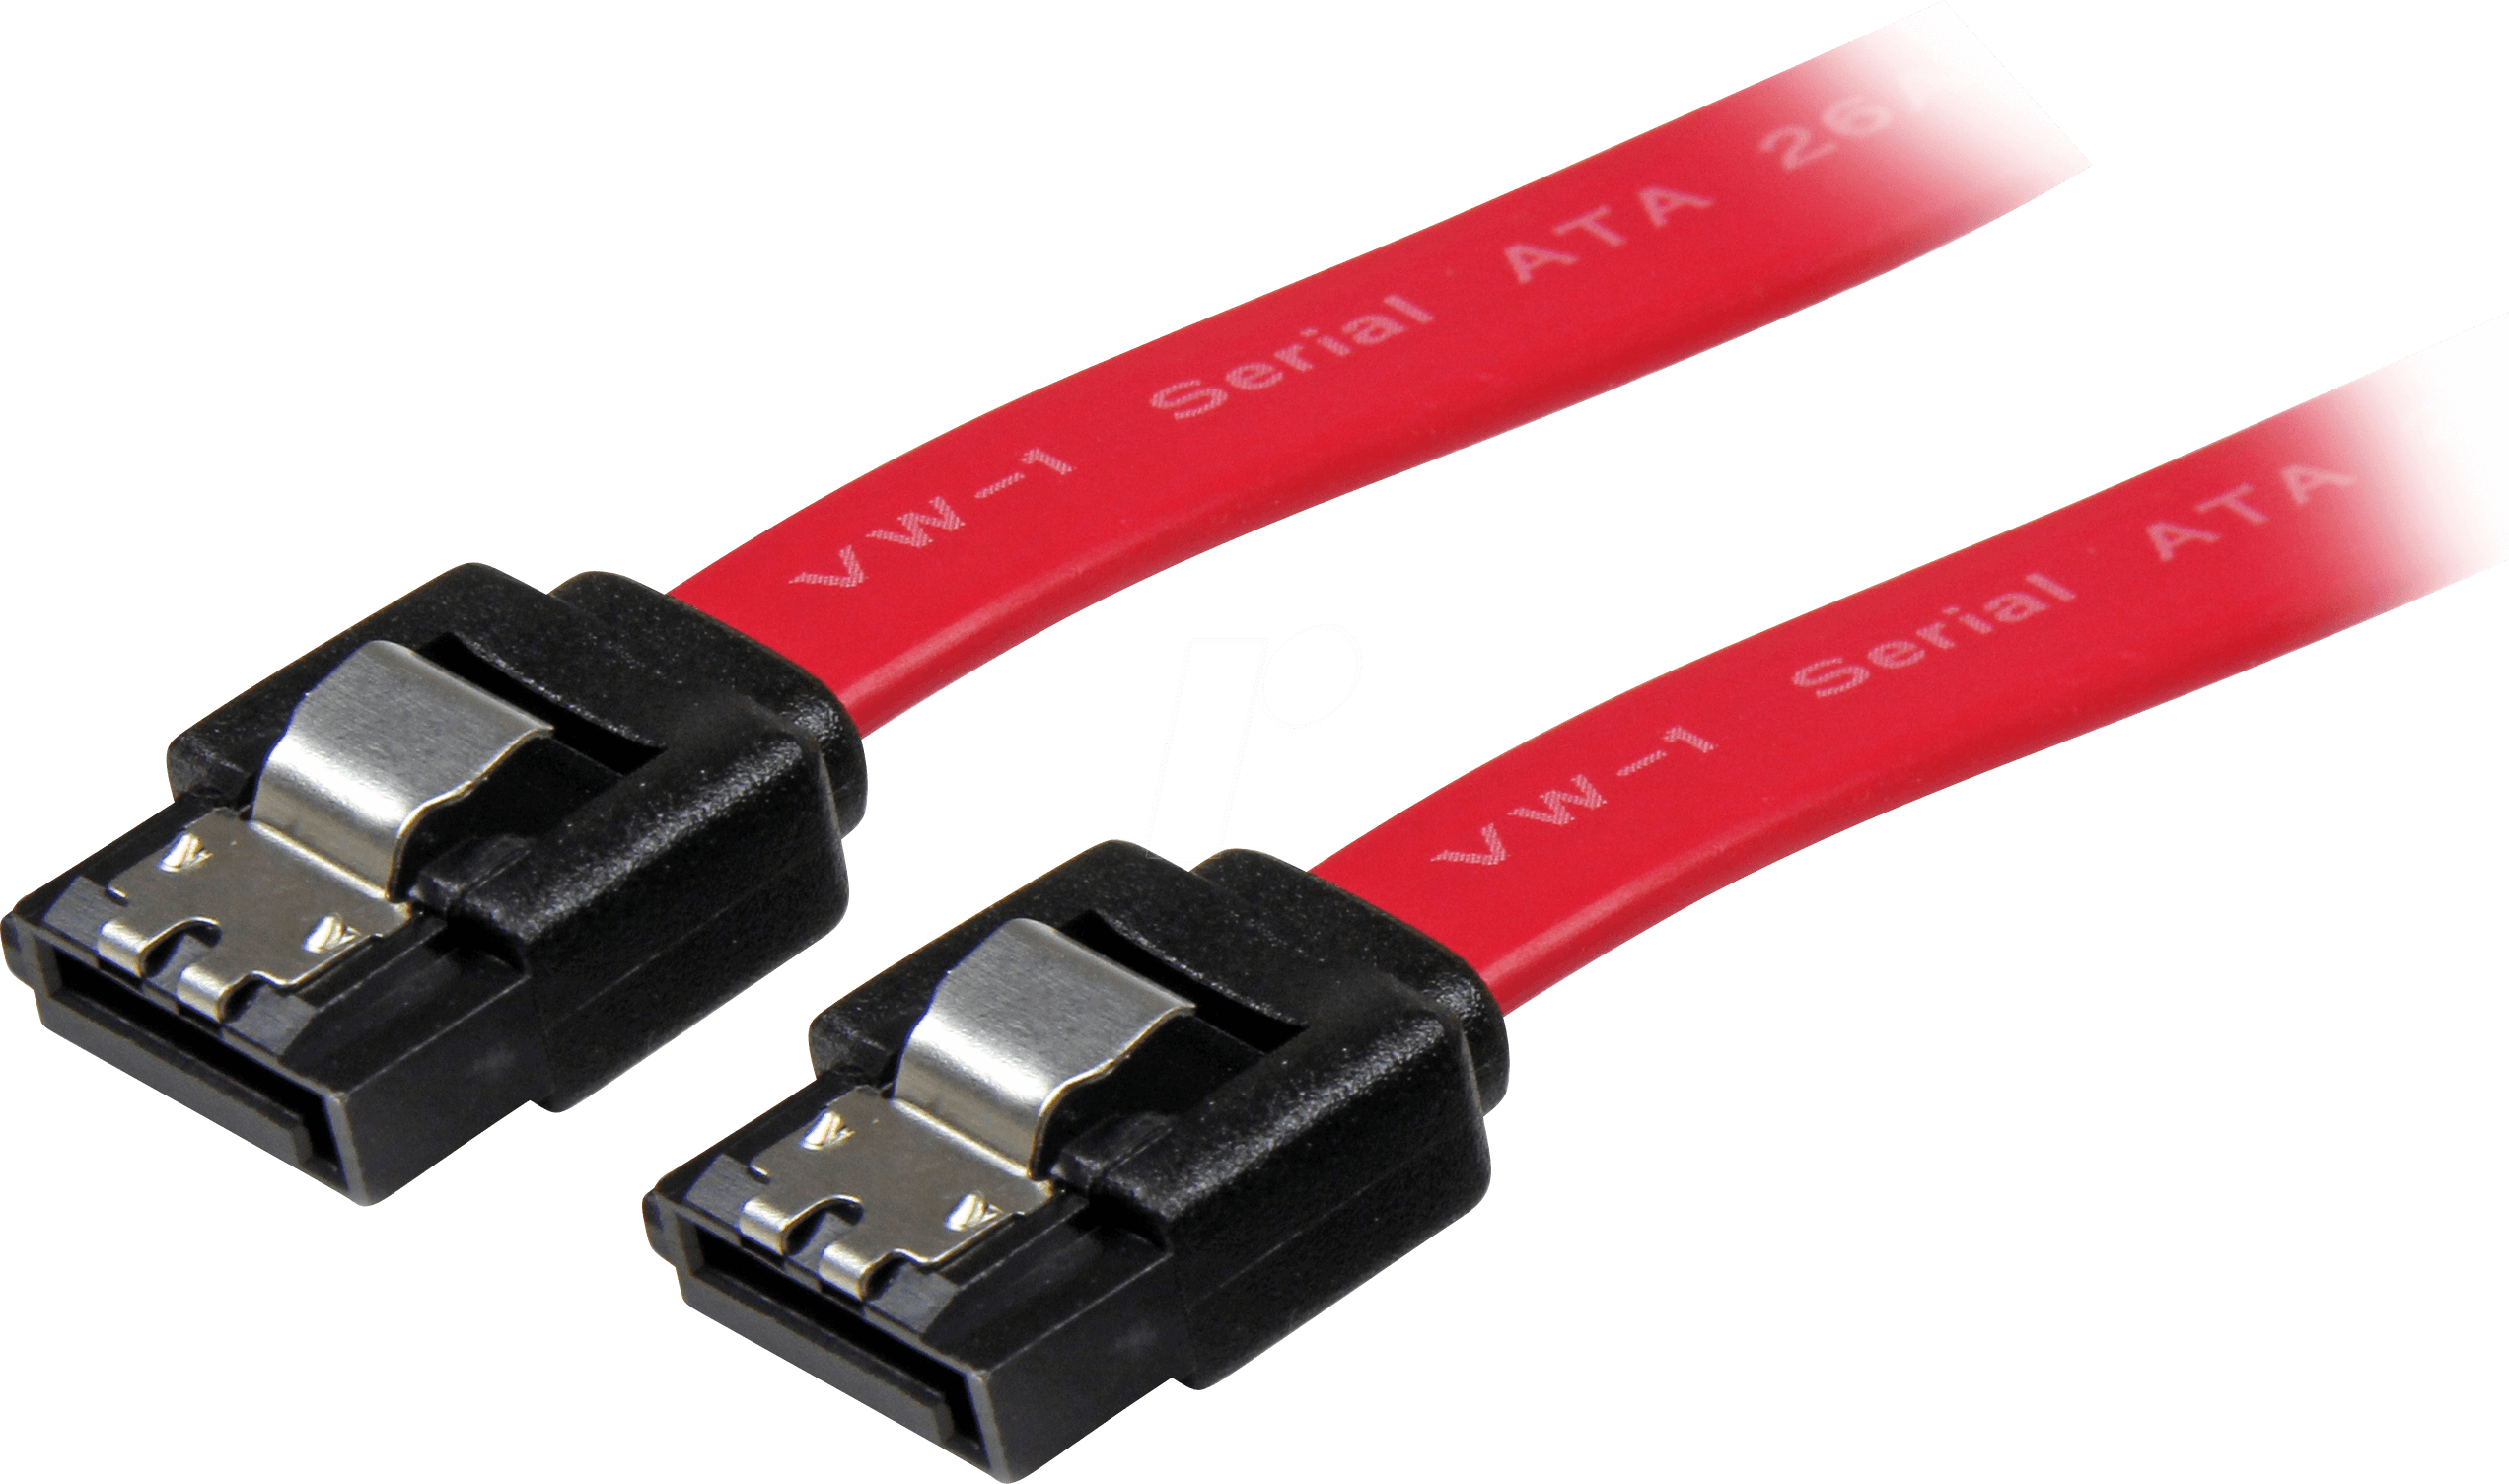 VALUE 11991550: Câble SATA connecteur 6 Gb - s vers connecteur SATA, 50 cm,  rouge, chez reichelt elektronik